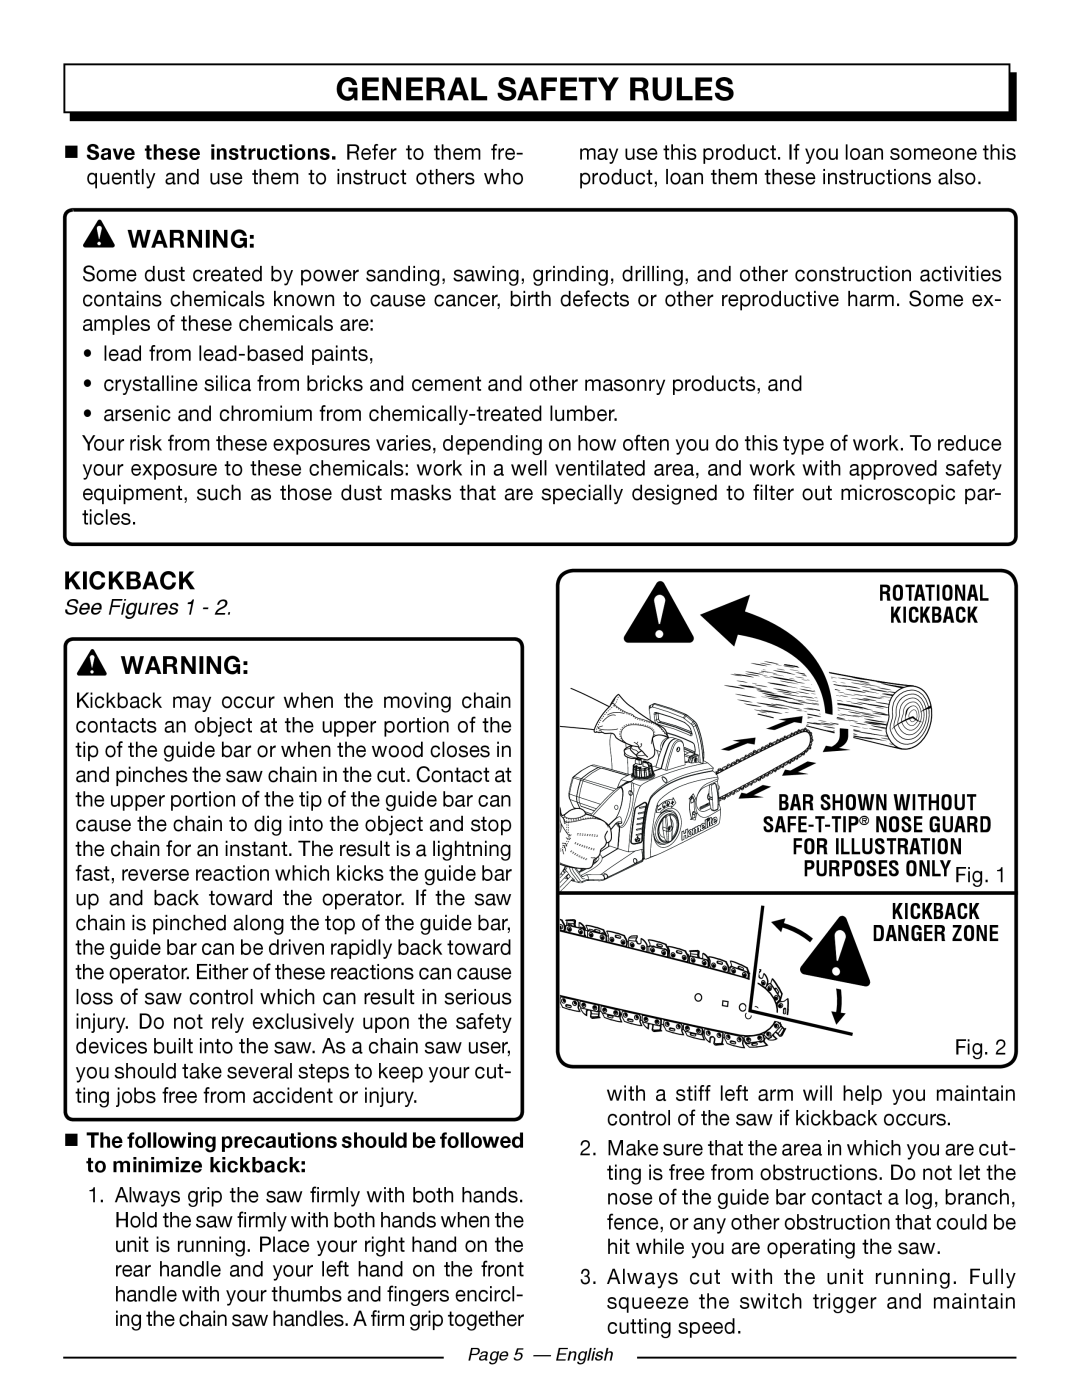 Homelite UT43102 General Safety Rules, See Figures 1, Rotational Kickback, Safe-T-Tip Nose Guard, Kickback Danger Zone 